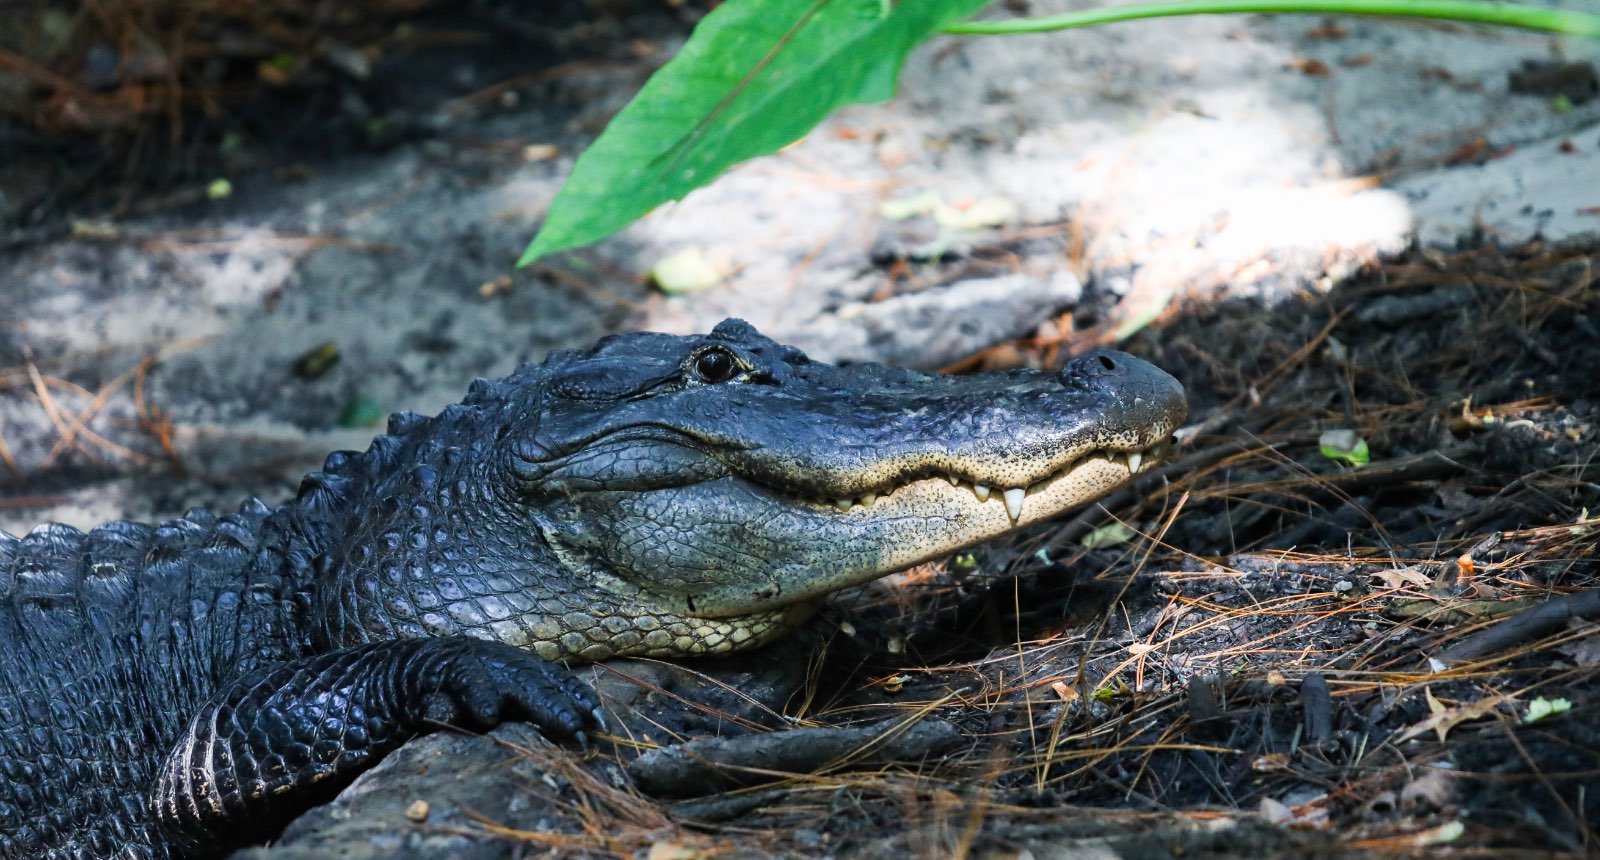 American alligator - Alligator mississippiensis